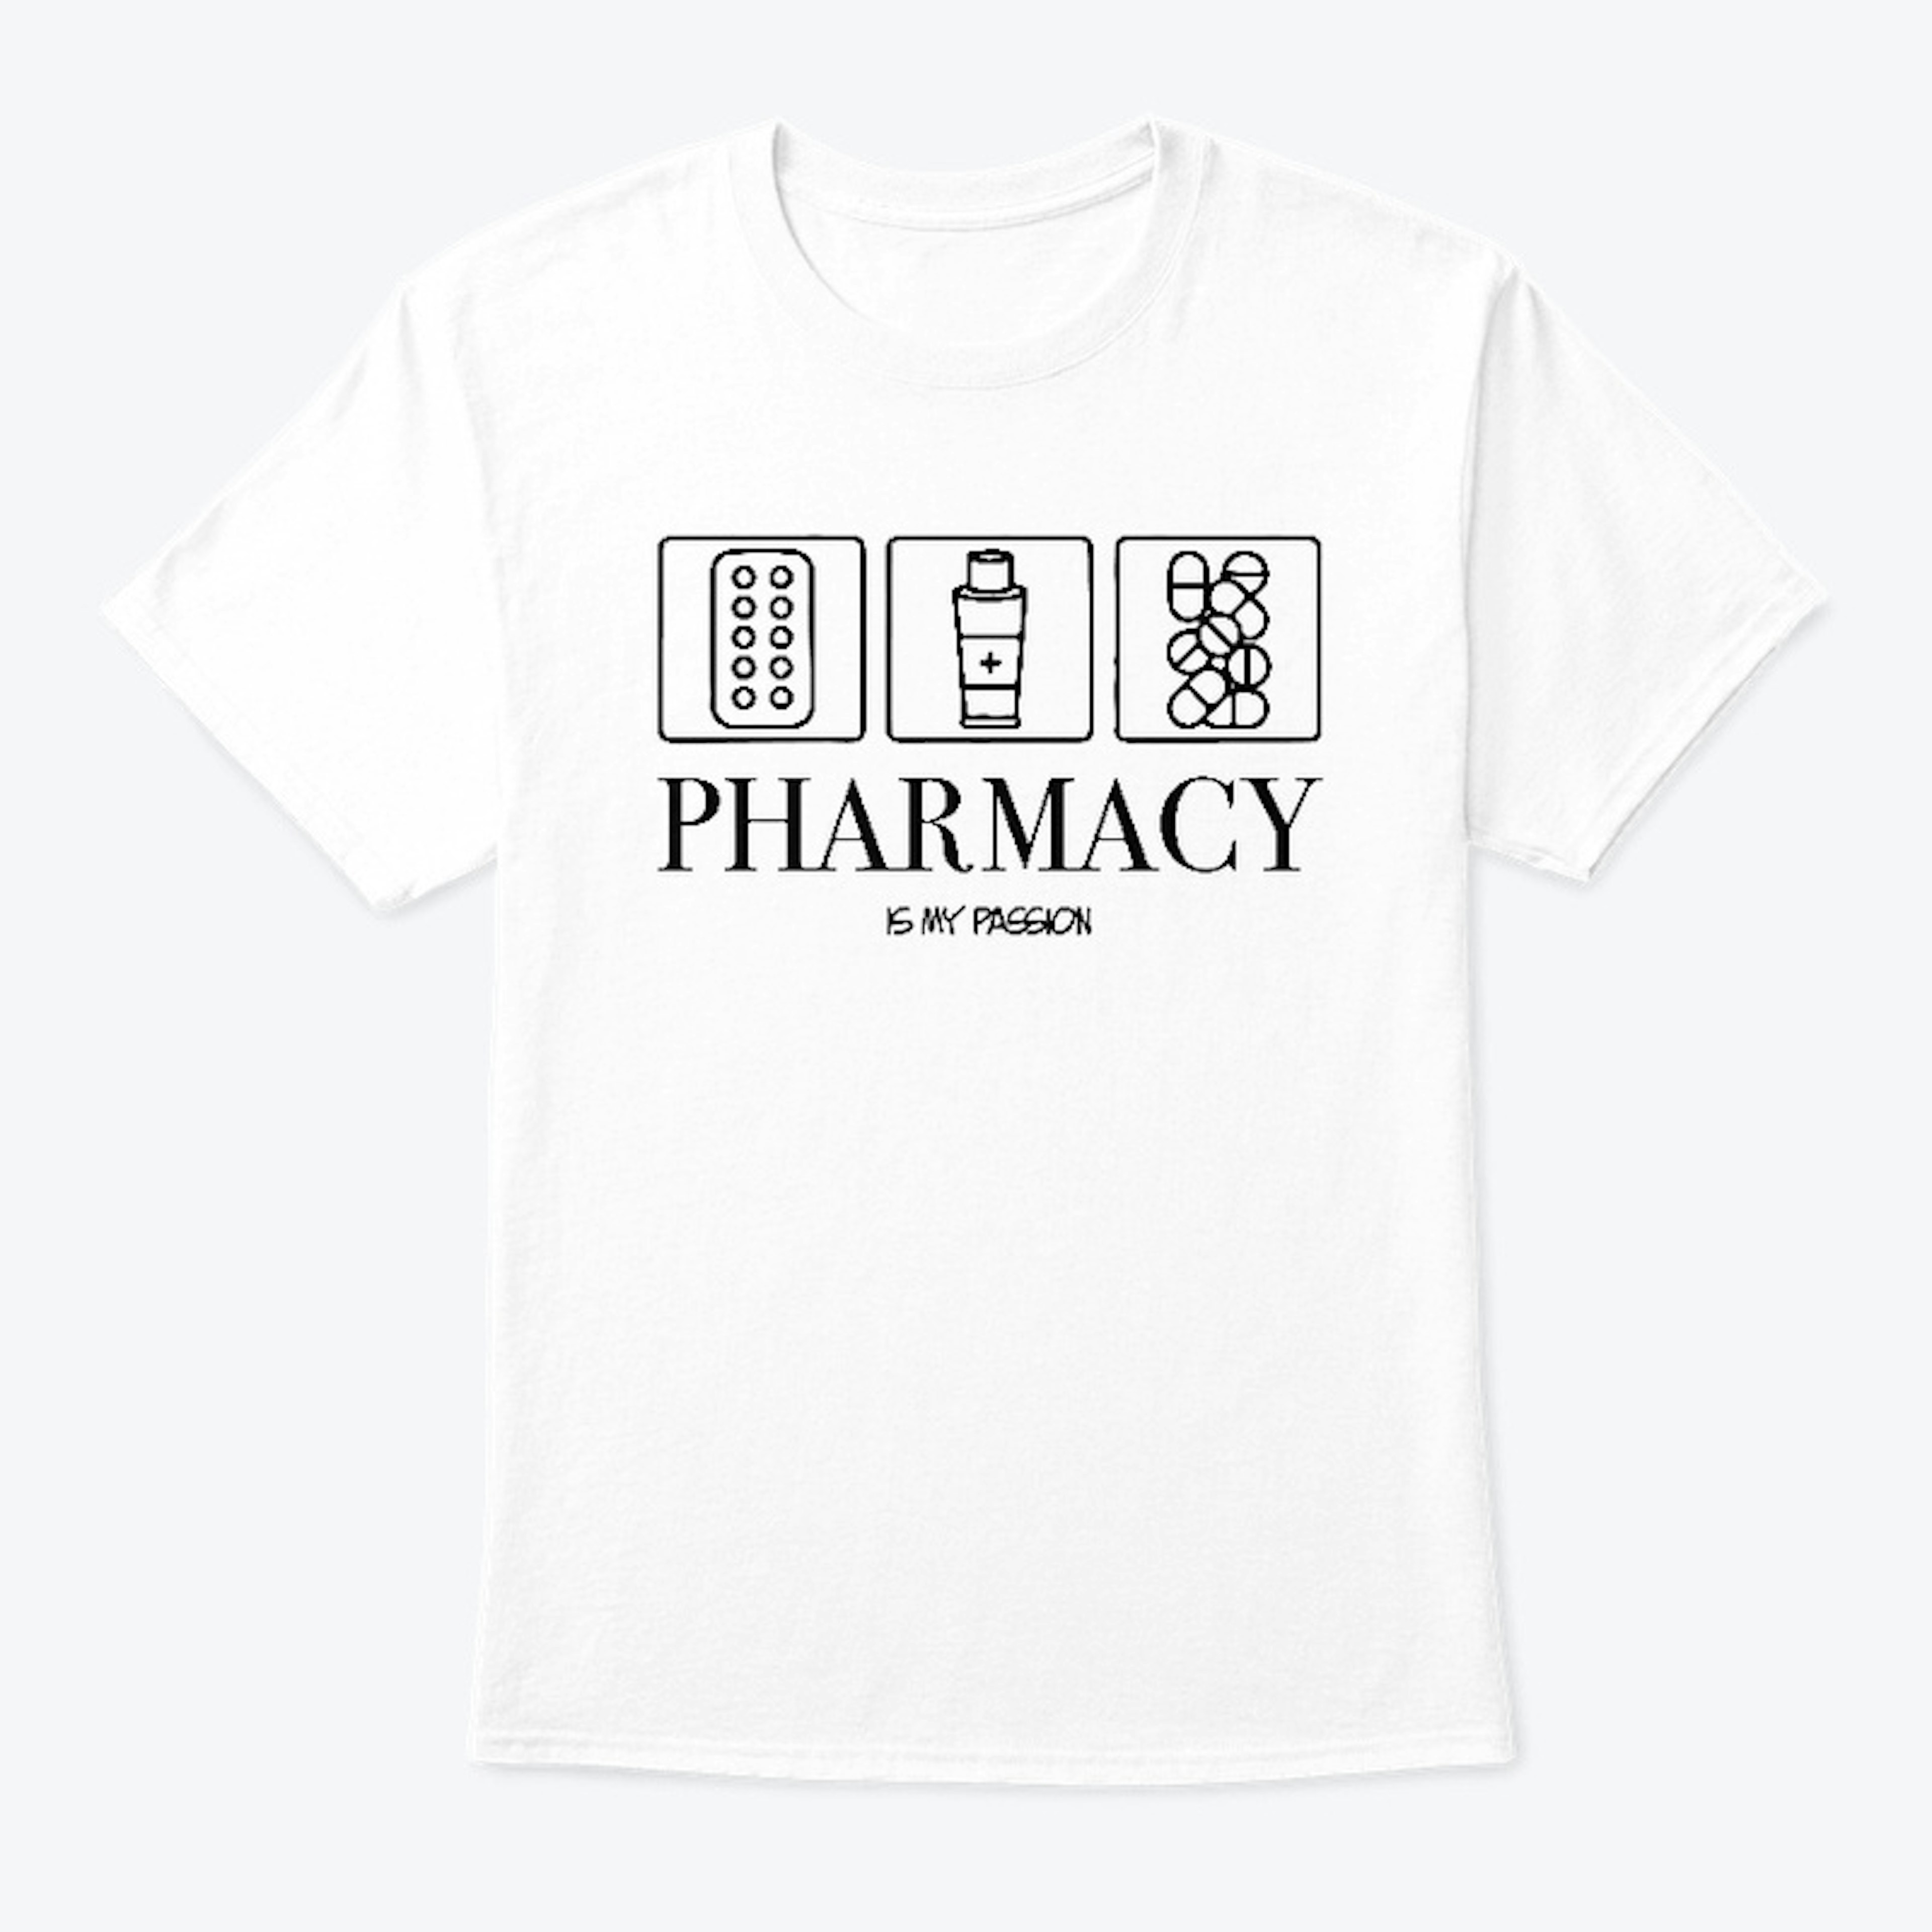 Pharmacist Shirt